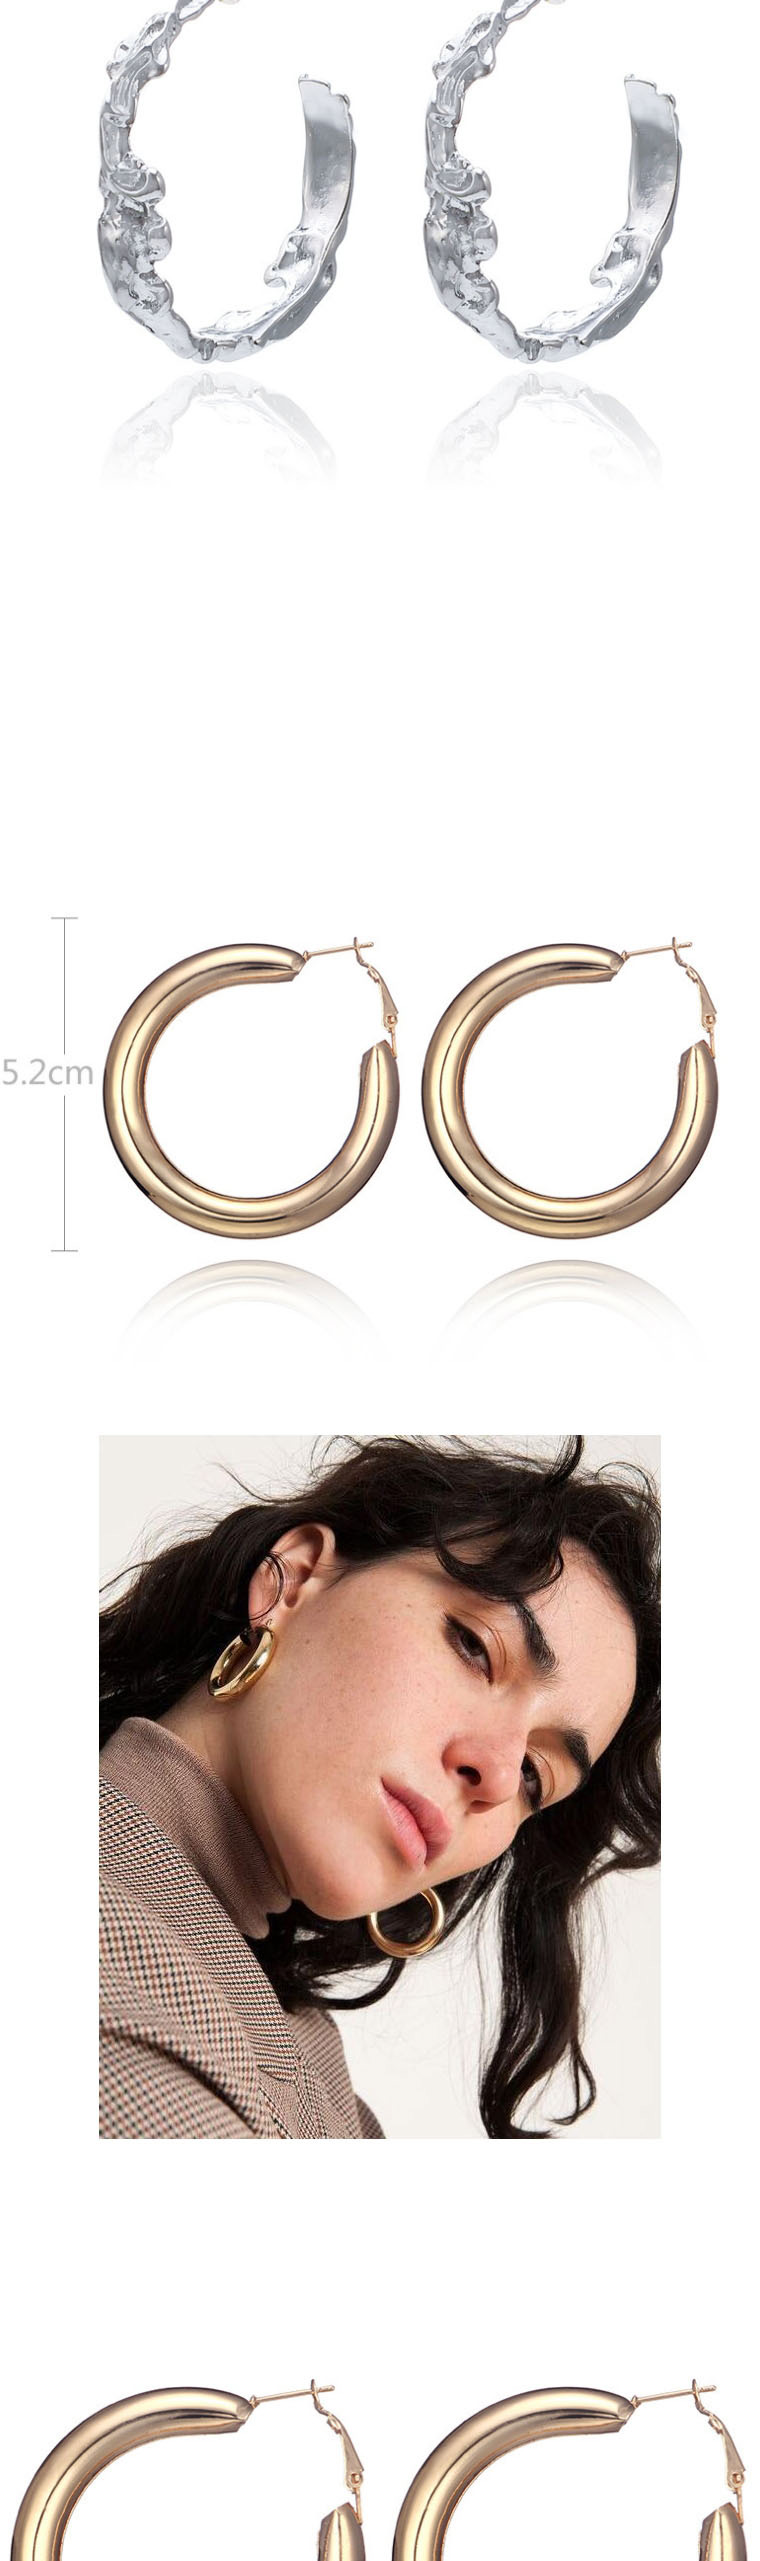 Fashion Silver Flower Open Earrings With Diamonds,Stud Earrings